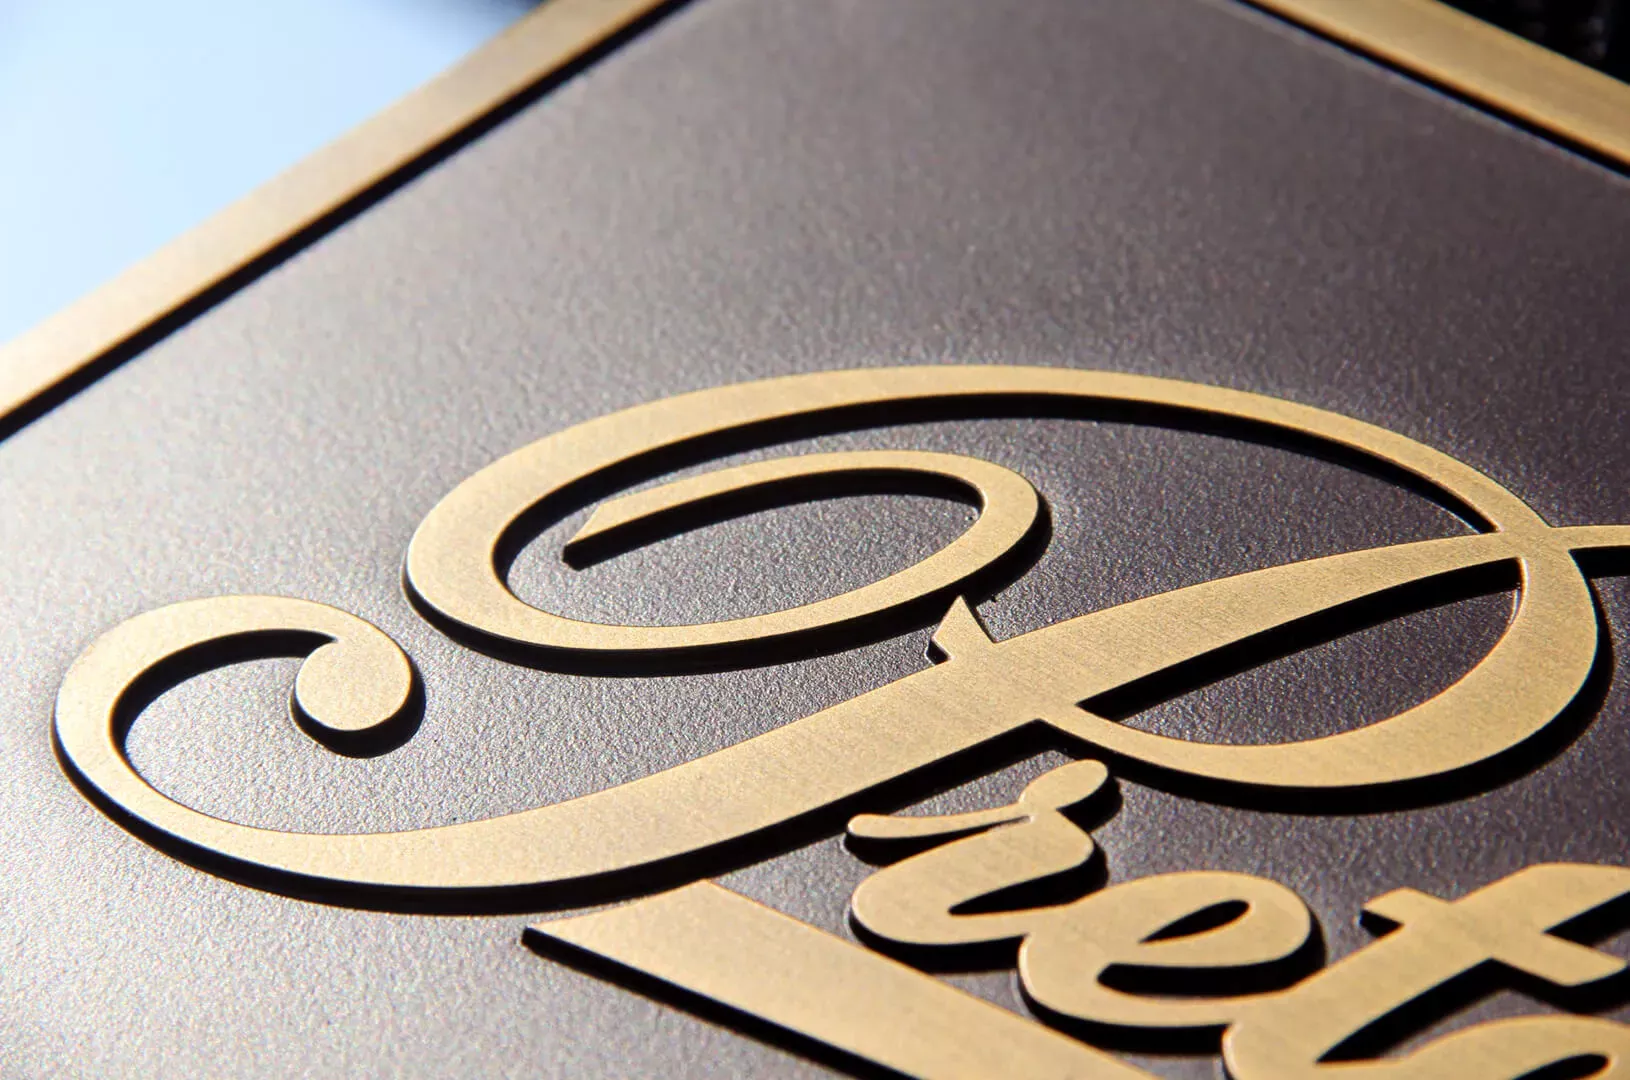 Placca fusa Pretende - targa in bronzo fuso con il logo Pretende